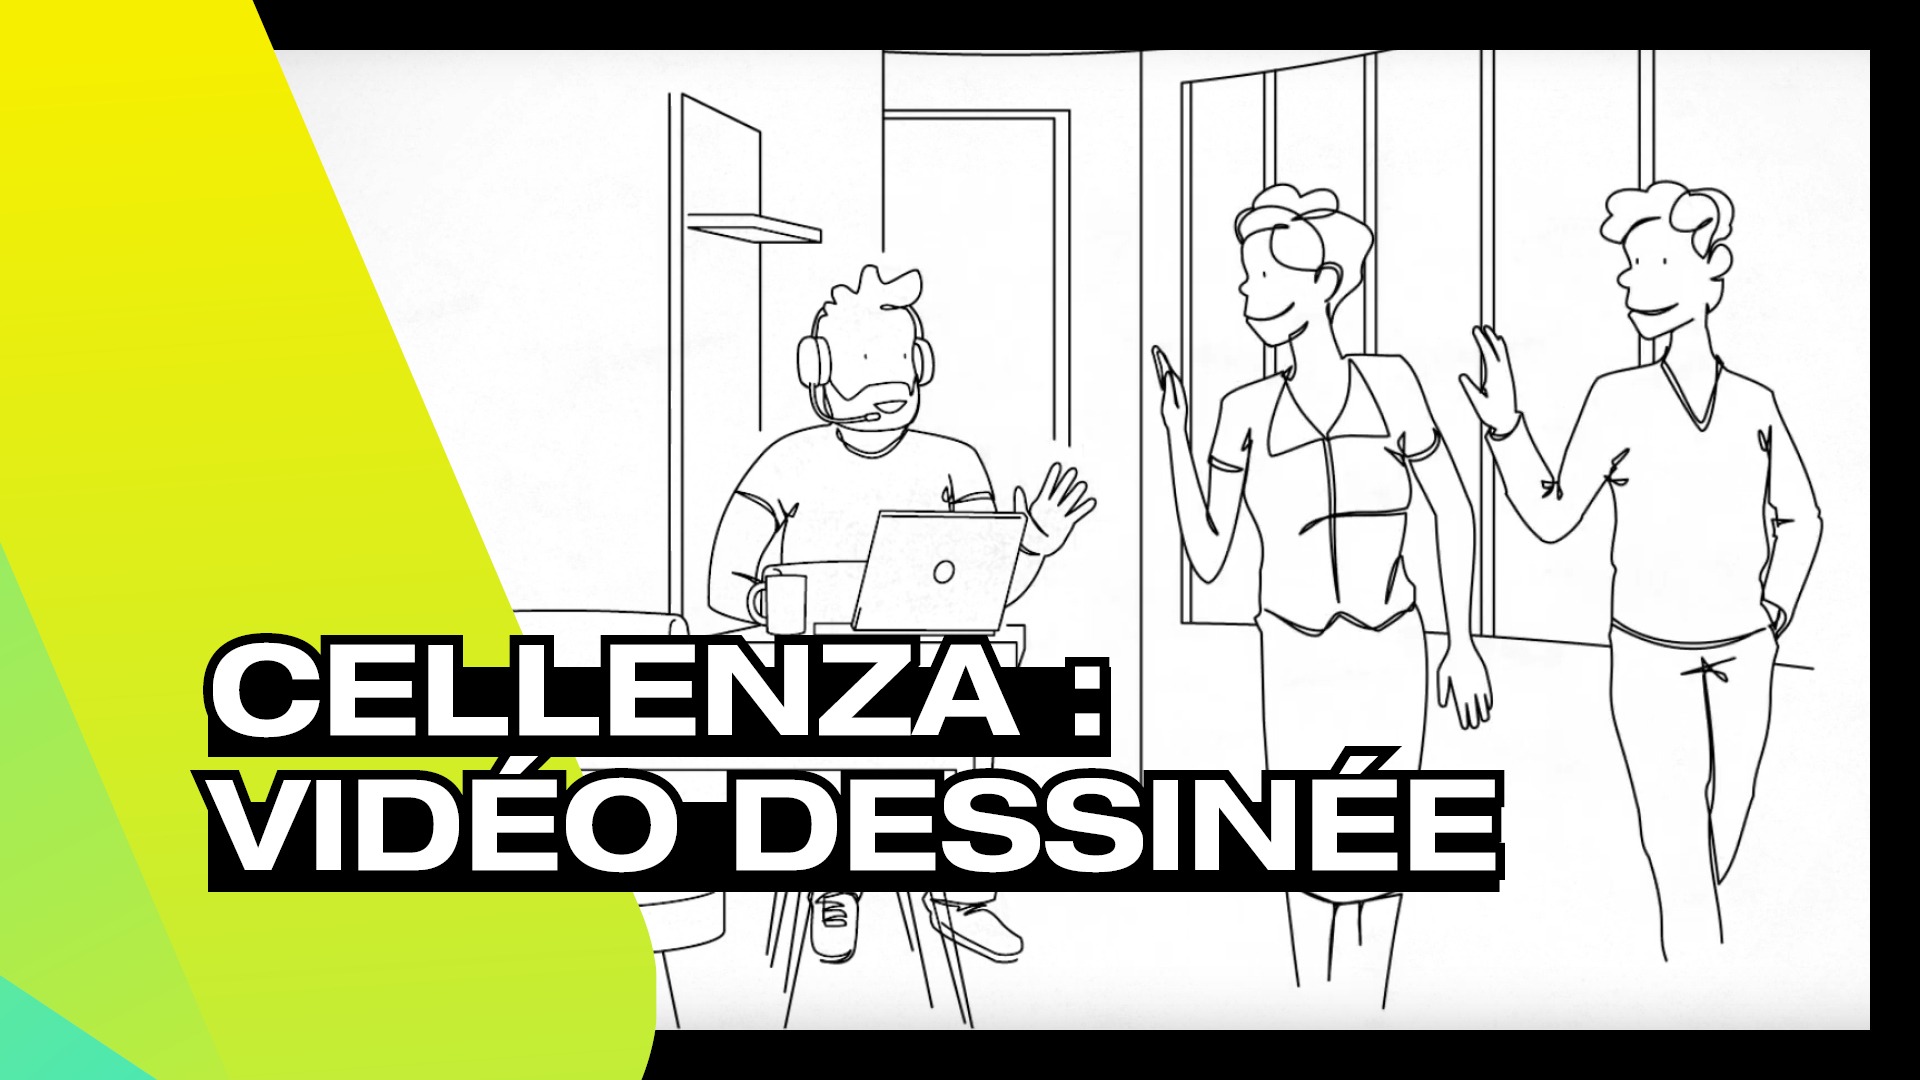 CELLENZA - Vidéo dessinéeCELLENZA – Vidéo dessinée